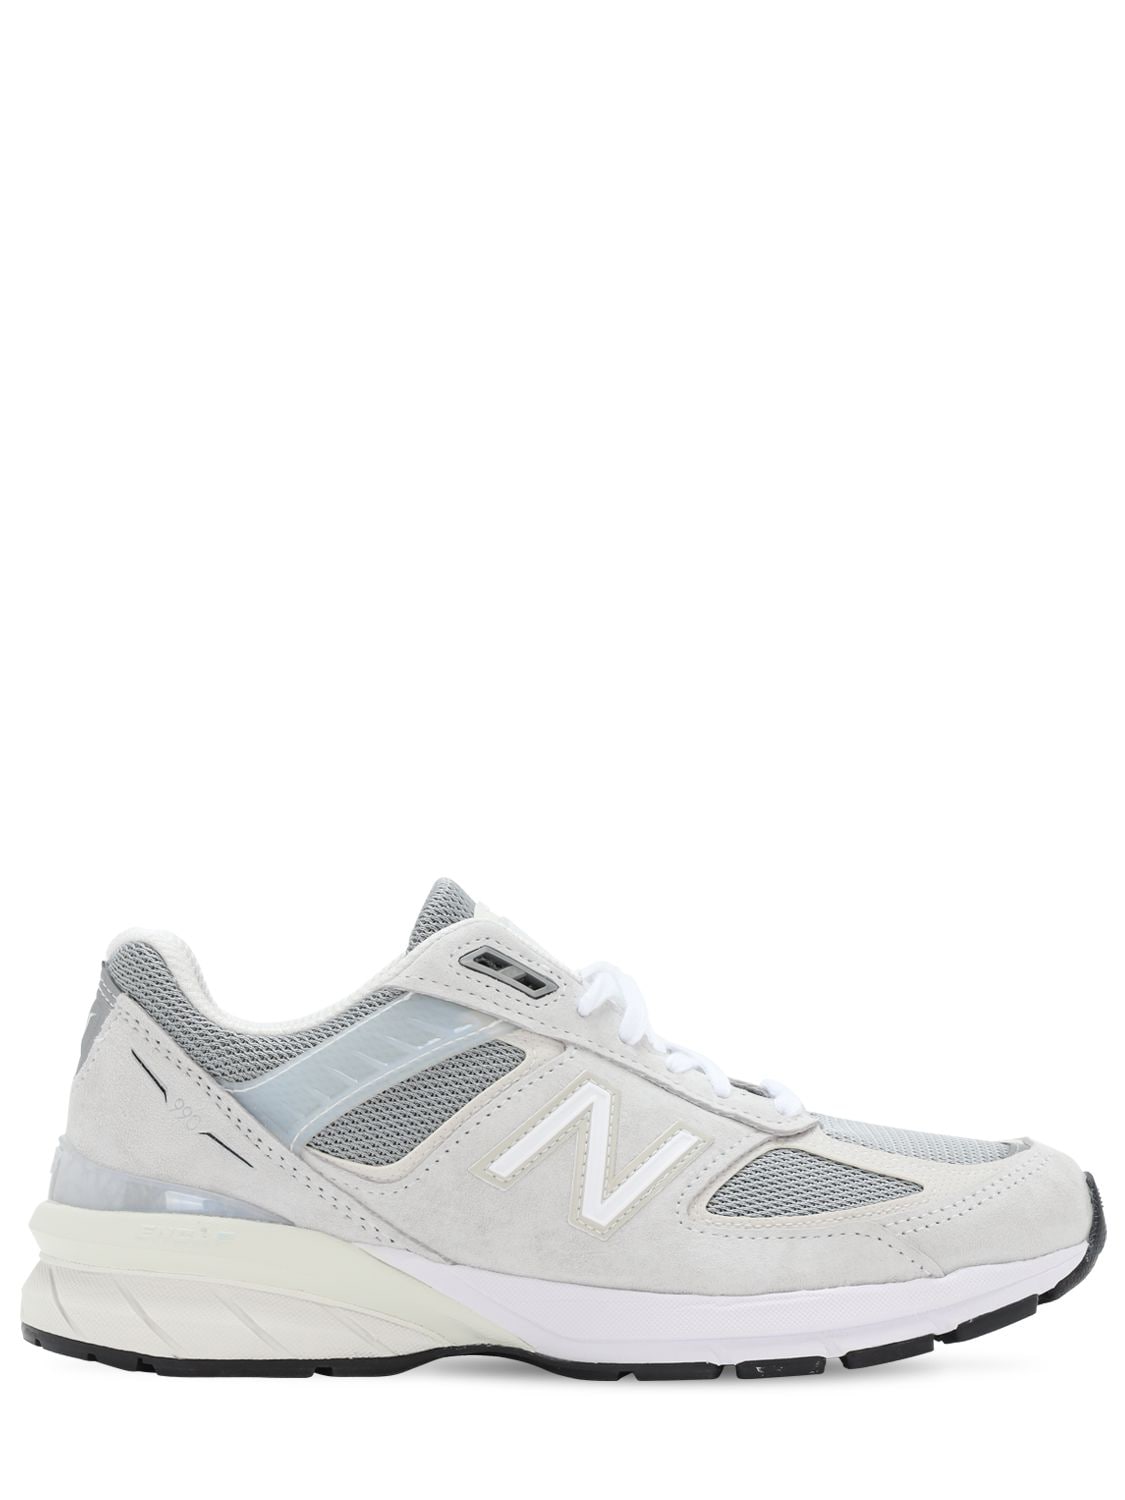 New Balance "990 V5"麂皮&网眼运动鞋 In White